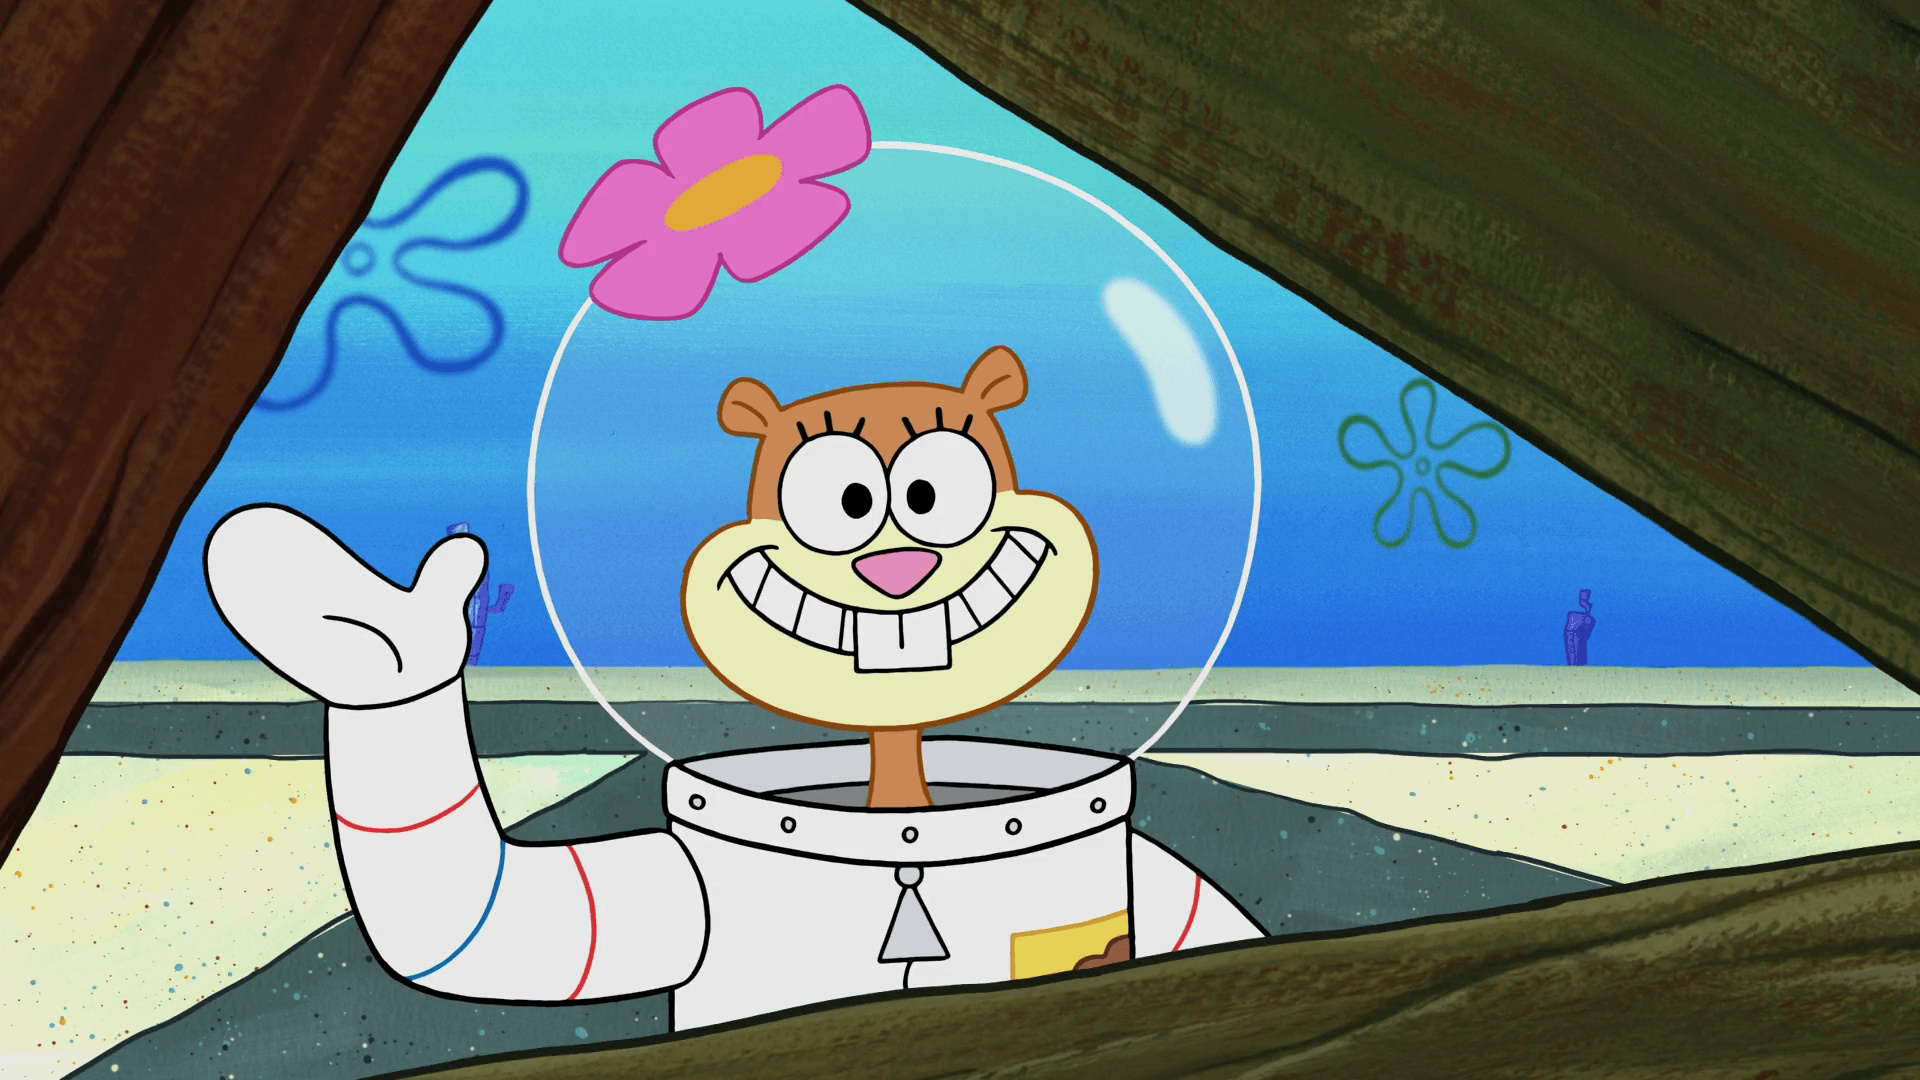 Spongebob sandy. Сэнди чикс. Губка Боб квадратные штаны Сэнди. Сэнди из губки Боба. Белка Сэнди.